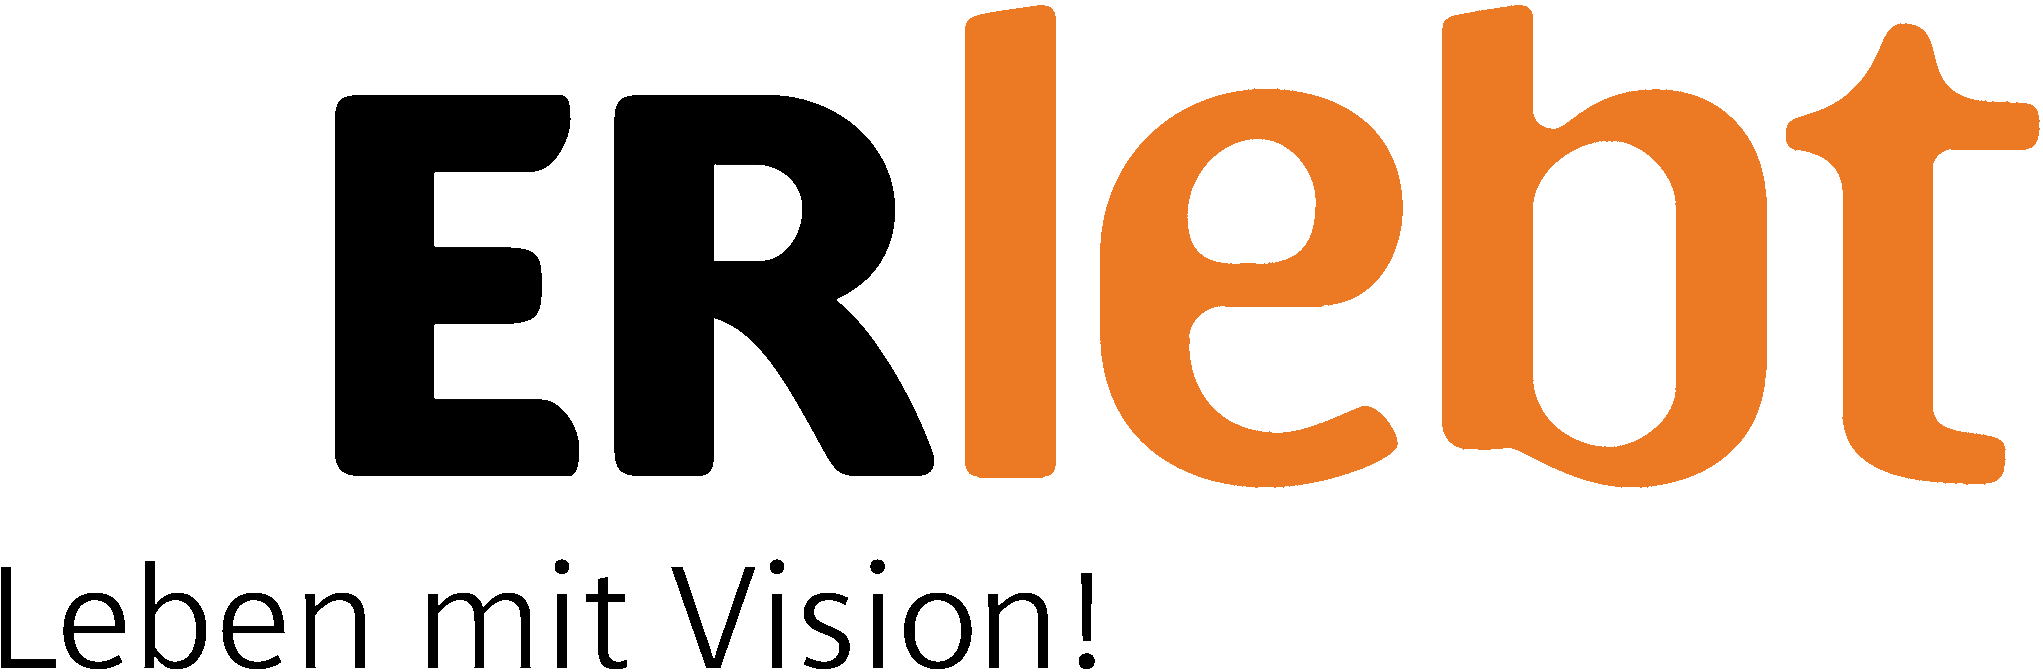 ERlebt – Leben mit Vision Logo